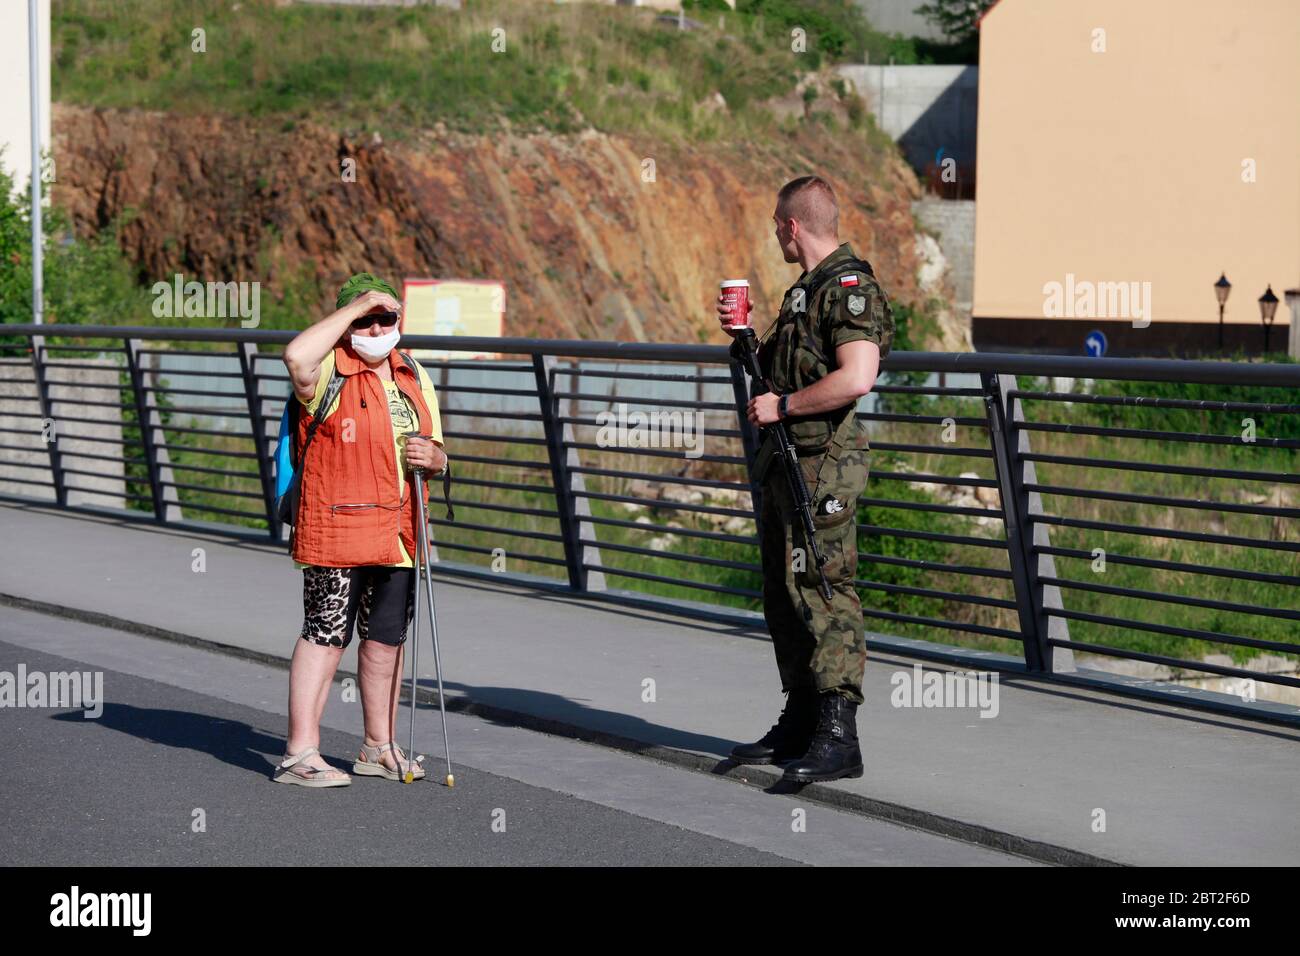 ein mit Maschinengehr bewaffneter polnischer Grenzschützer unterhält sich mit einer Frau an der Altstadtbrücke in Zgorzelec am 22.5.2020 Banque D'Images